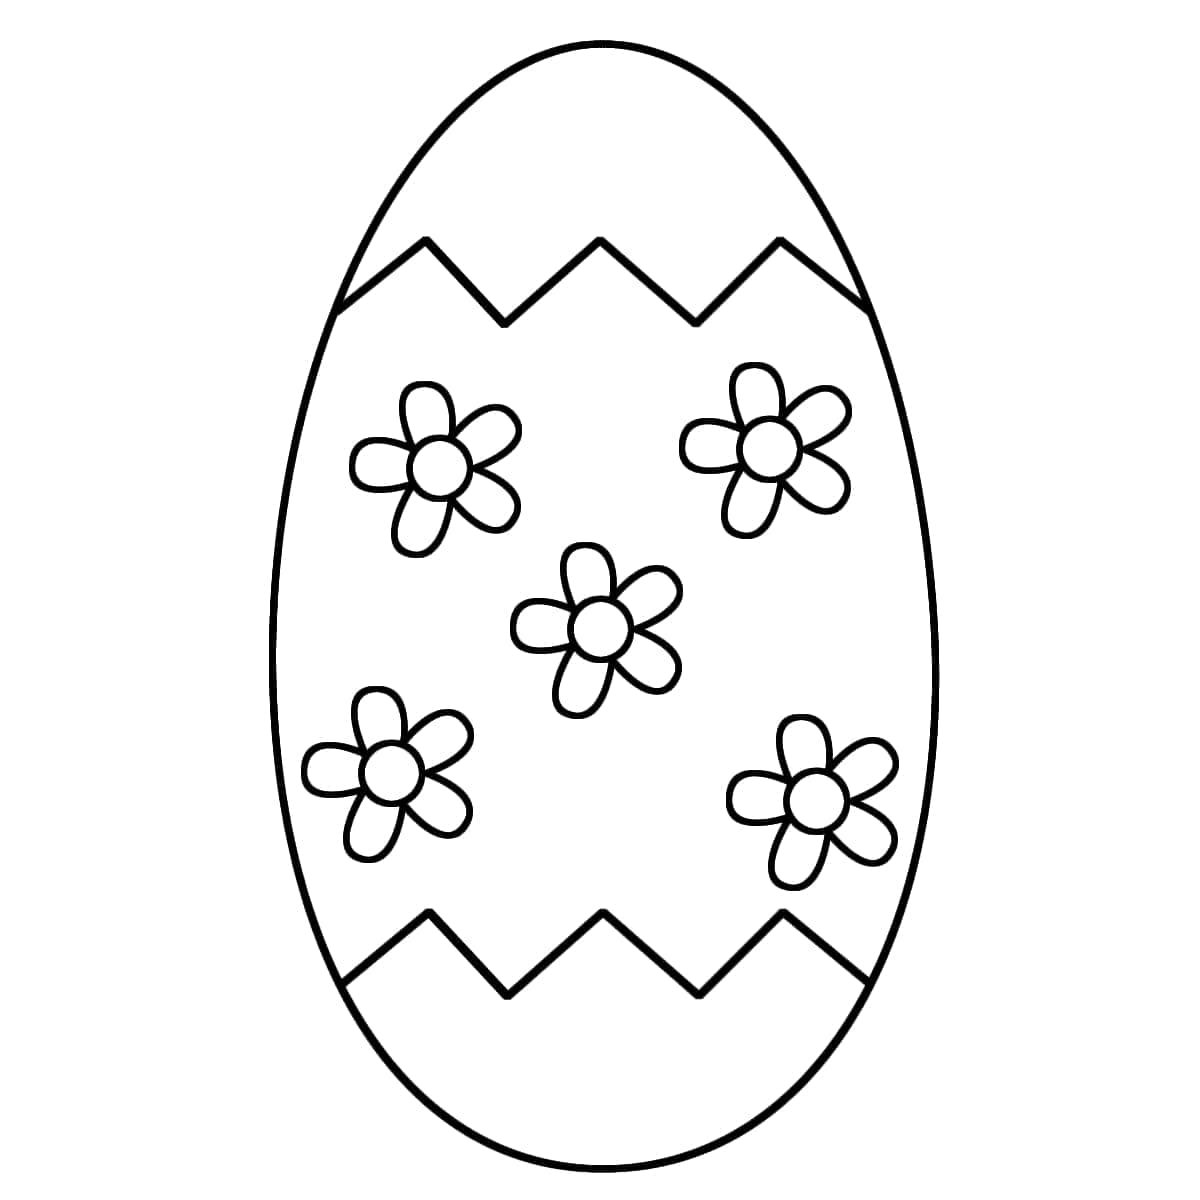 Пасхальное яйцо рисунок для детей. Пасхальное яйцо раскраска. Пасхальное яйцо раскраска для детей. Раскраски пасочных яиц. Трафареты пасхальных яиц для раскрашивания.